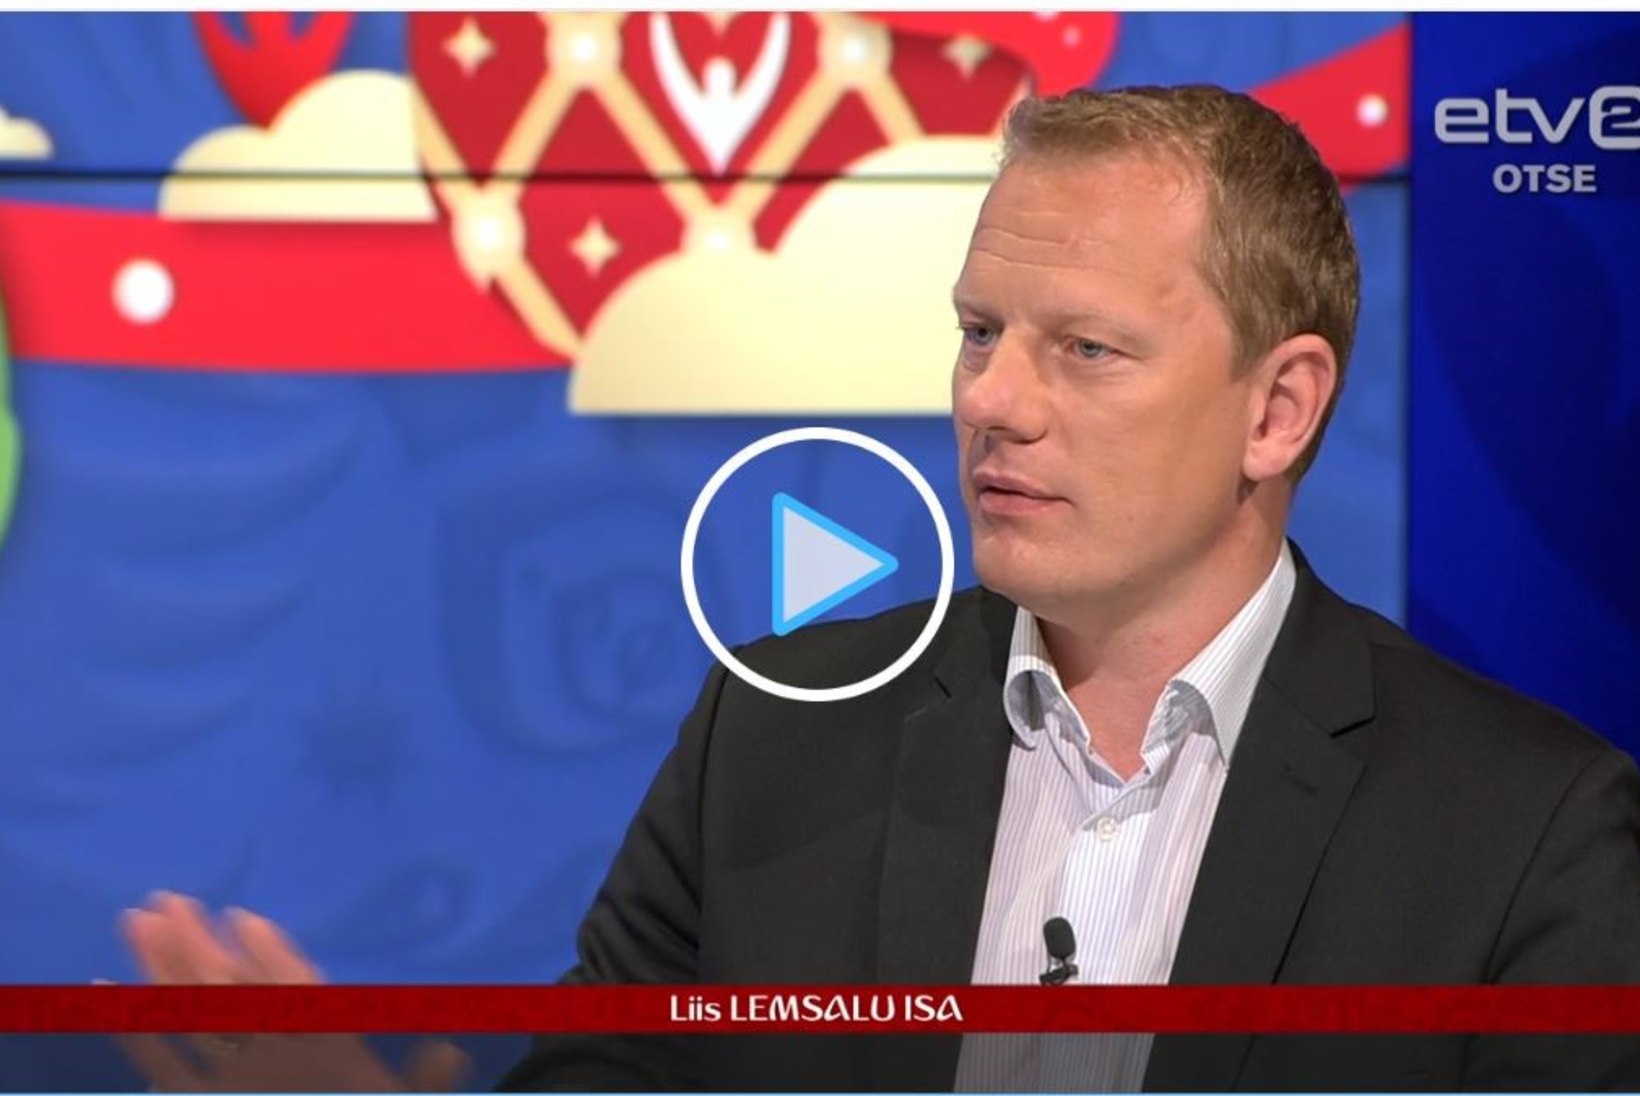 PILTUUDIS | Tohoh! Liis Lemsalu isa kutsuti ETVsse jalgpalli kommenteerima!